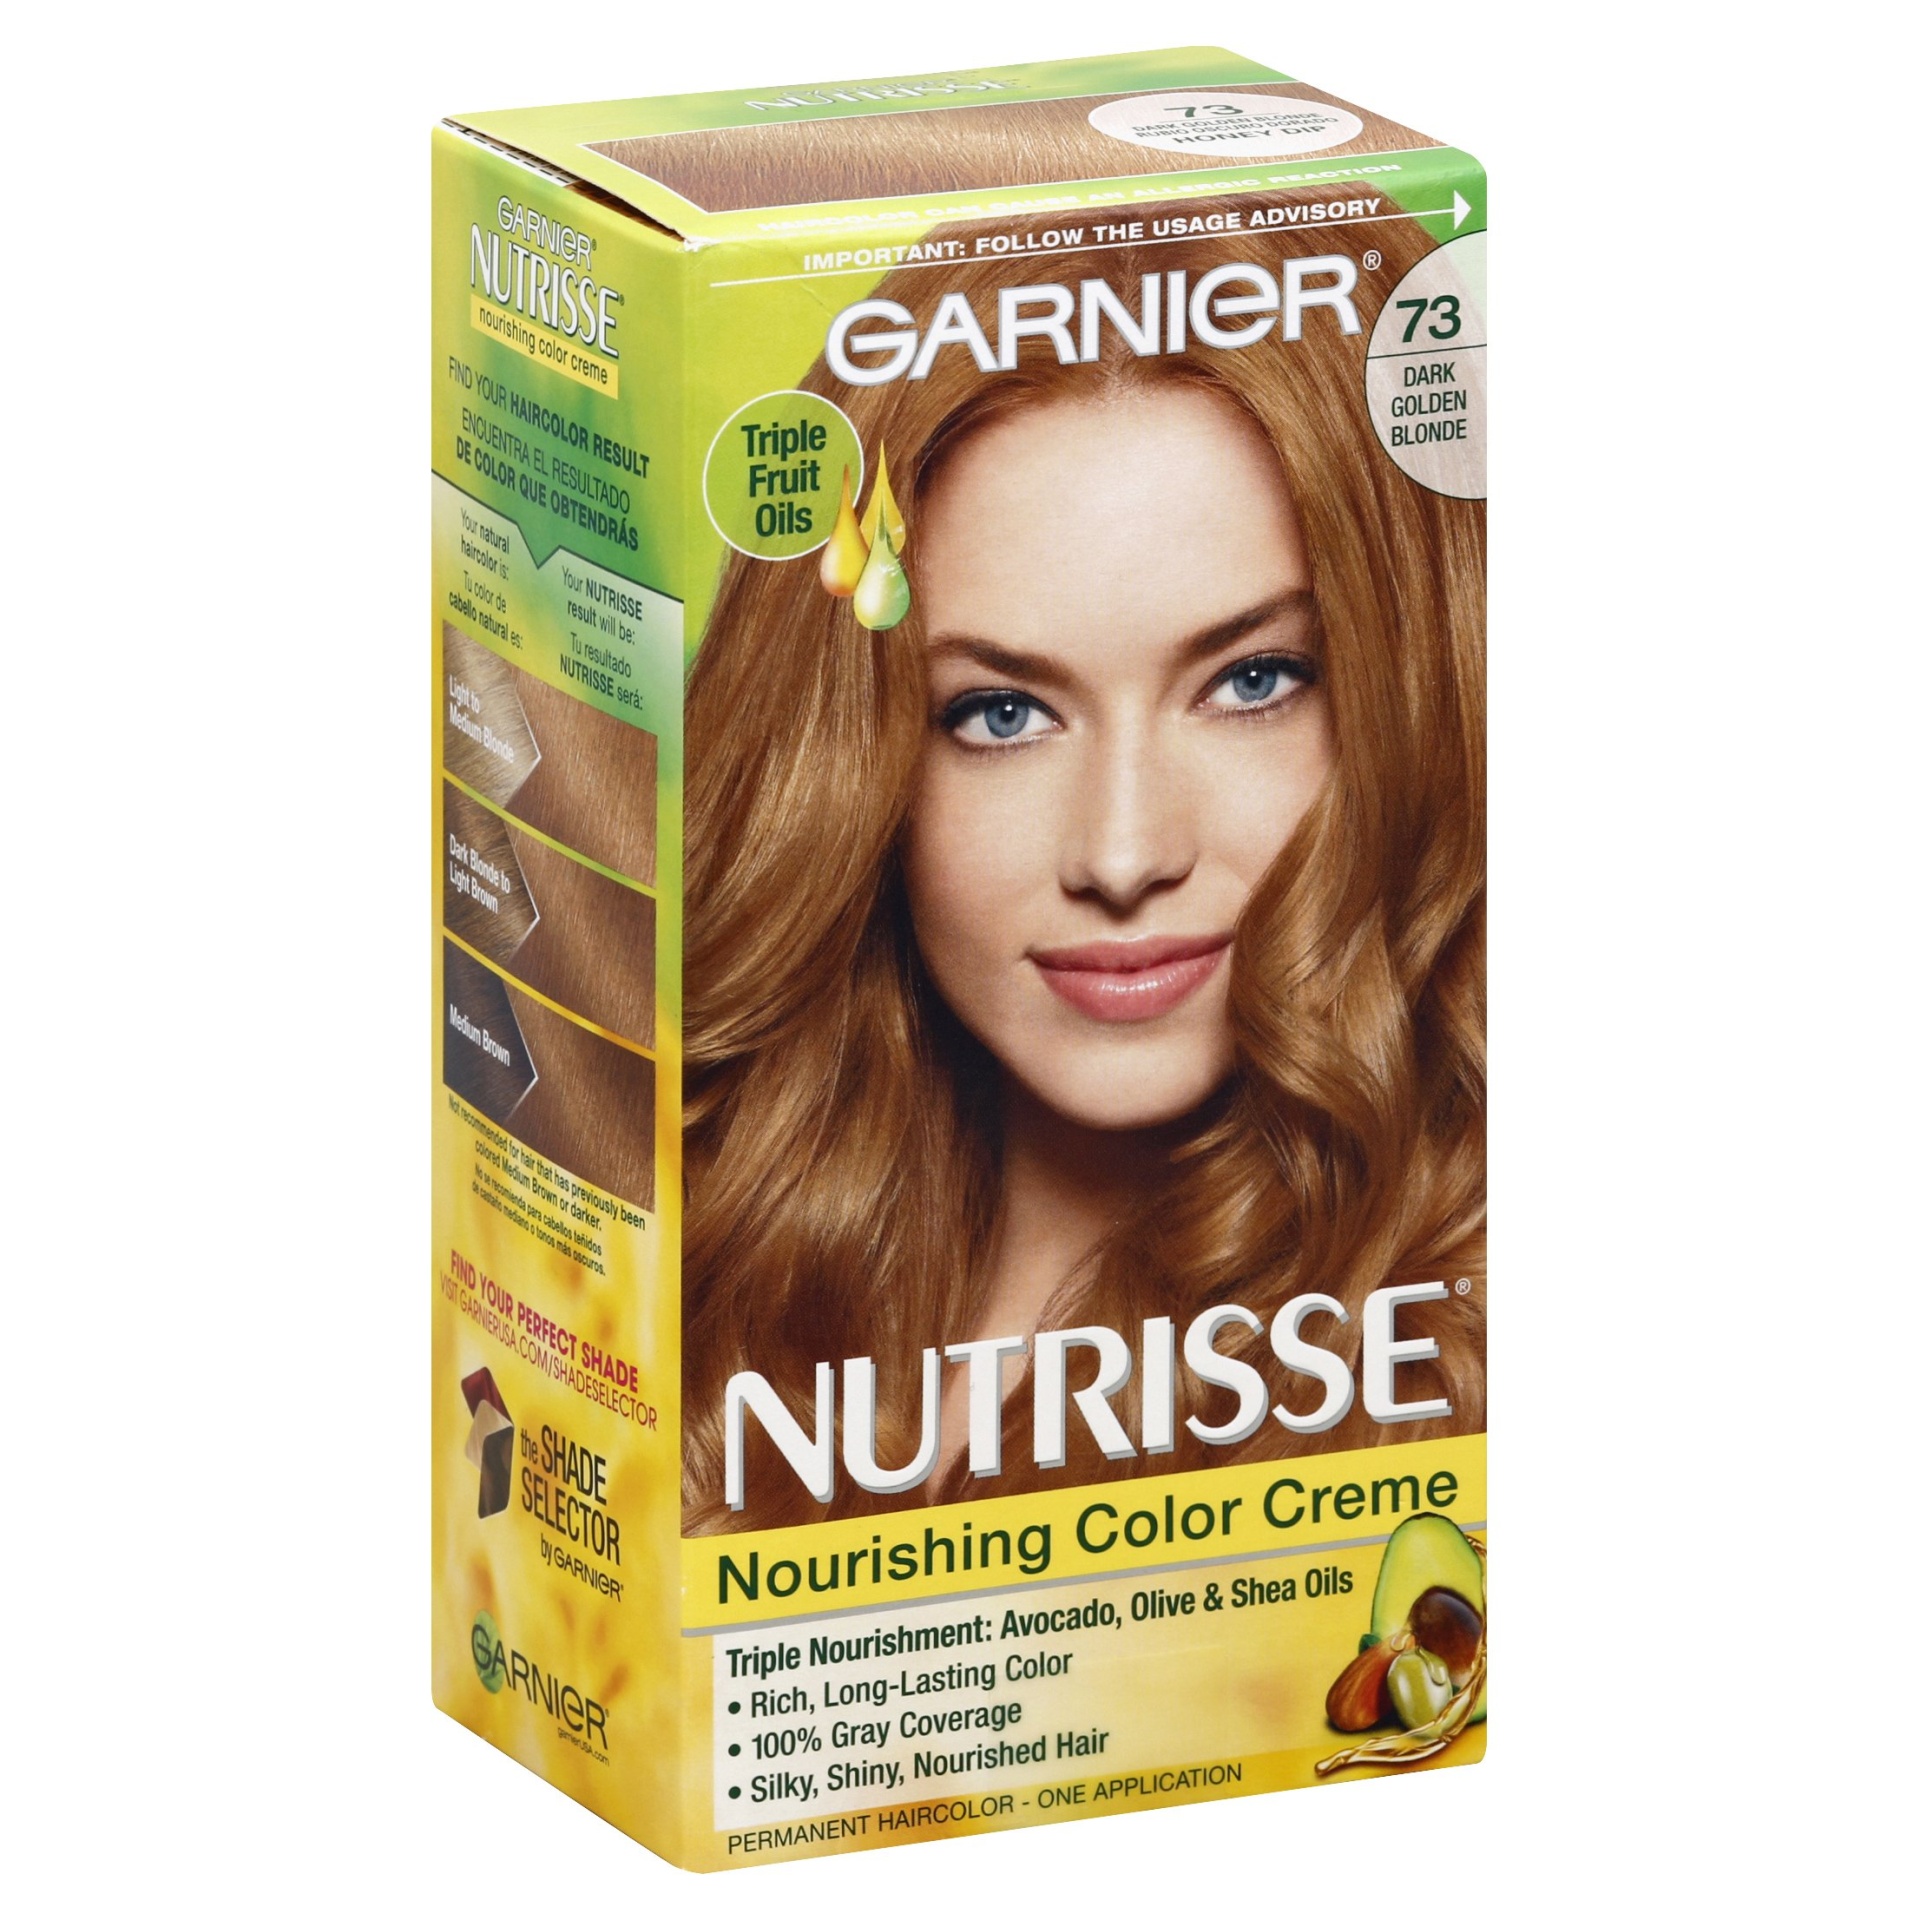 Garnier Nutrisse Nourishing Hair Color Creme Dark Golden Blonde | My ...